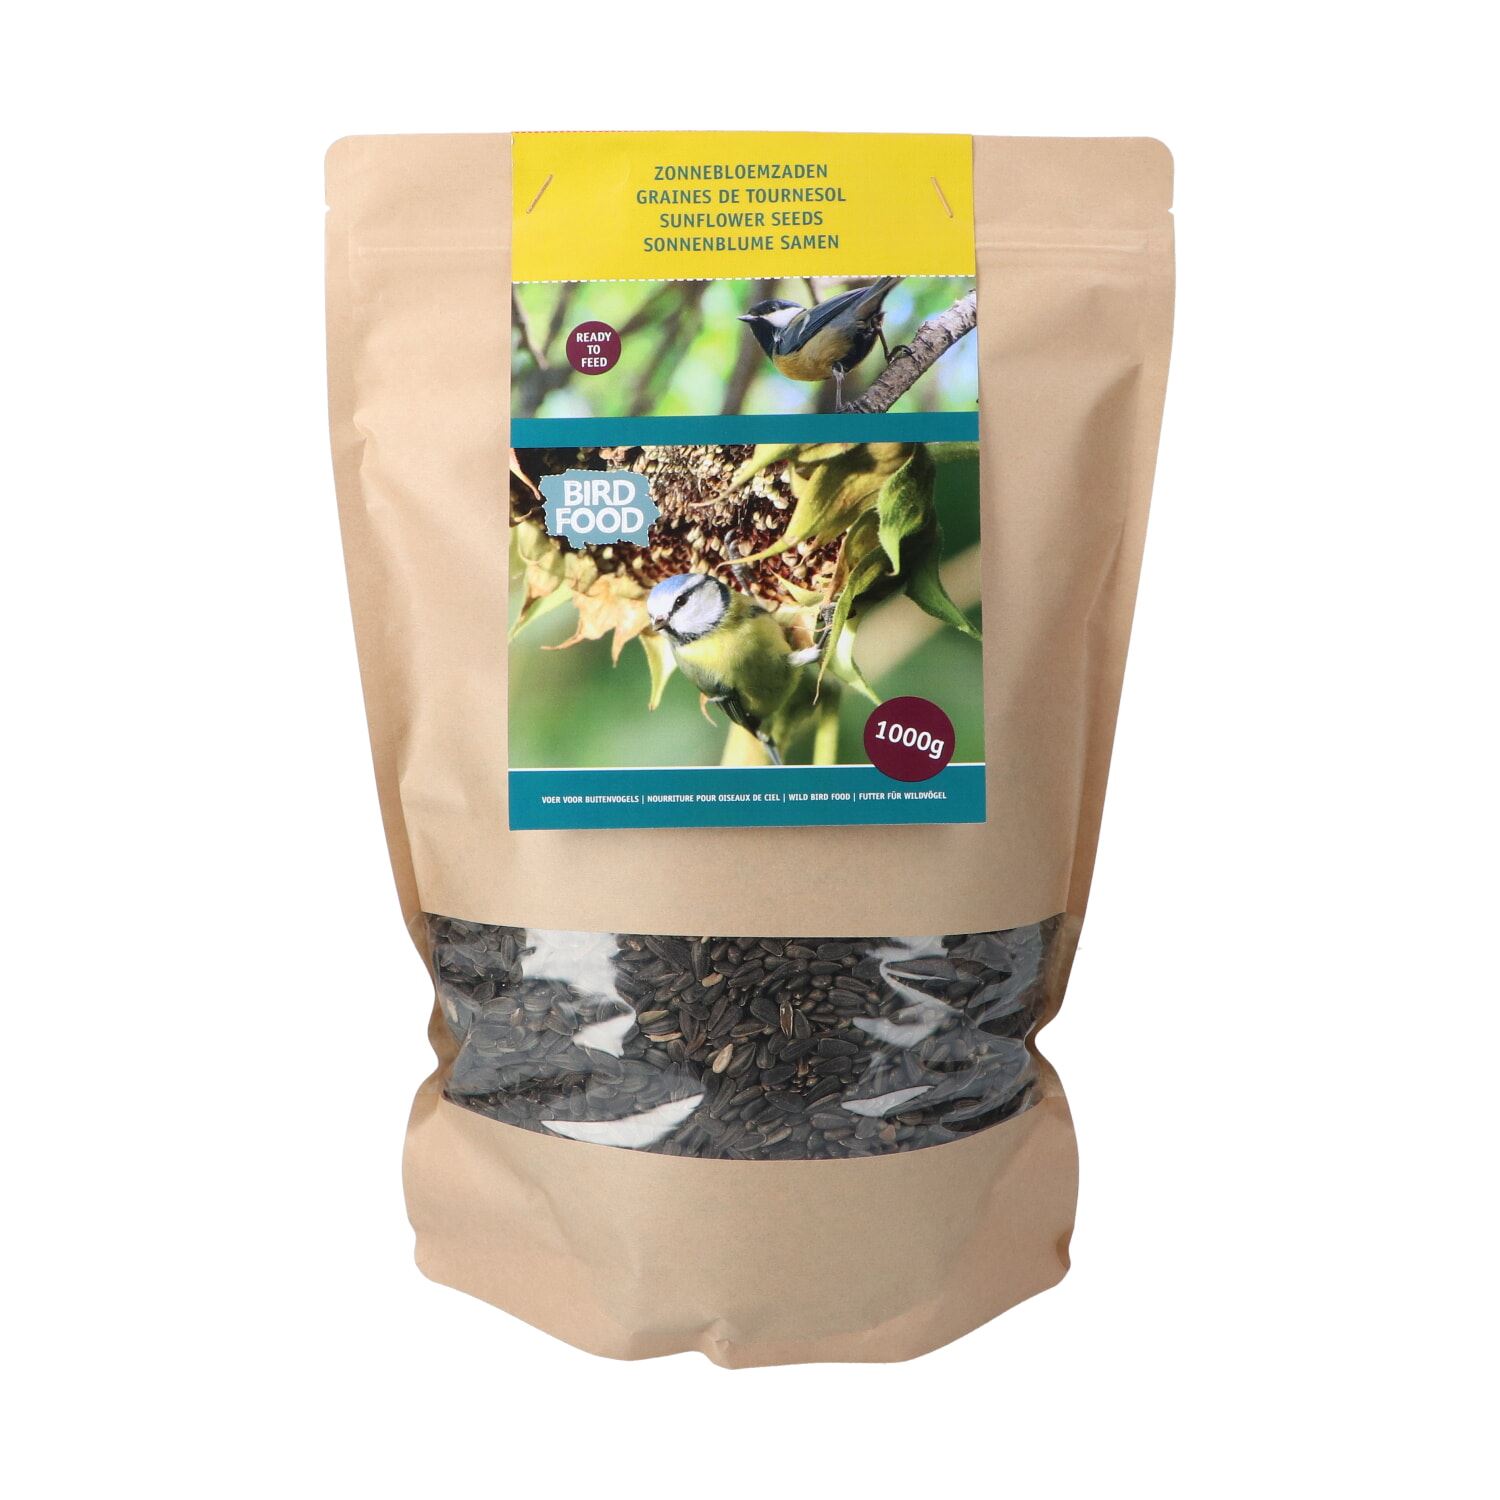 Bûten Food - Zonnebloemzaden in duurzame verpakking - 1 kg